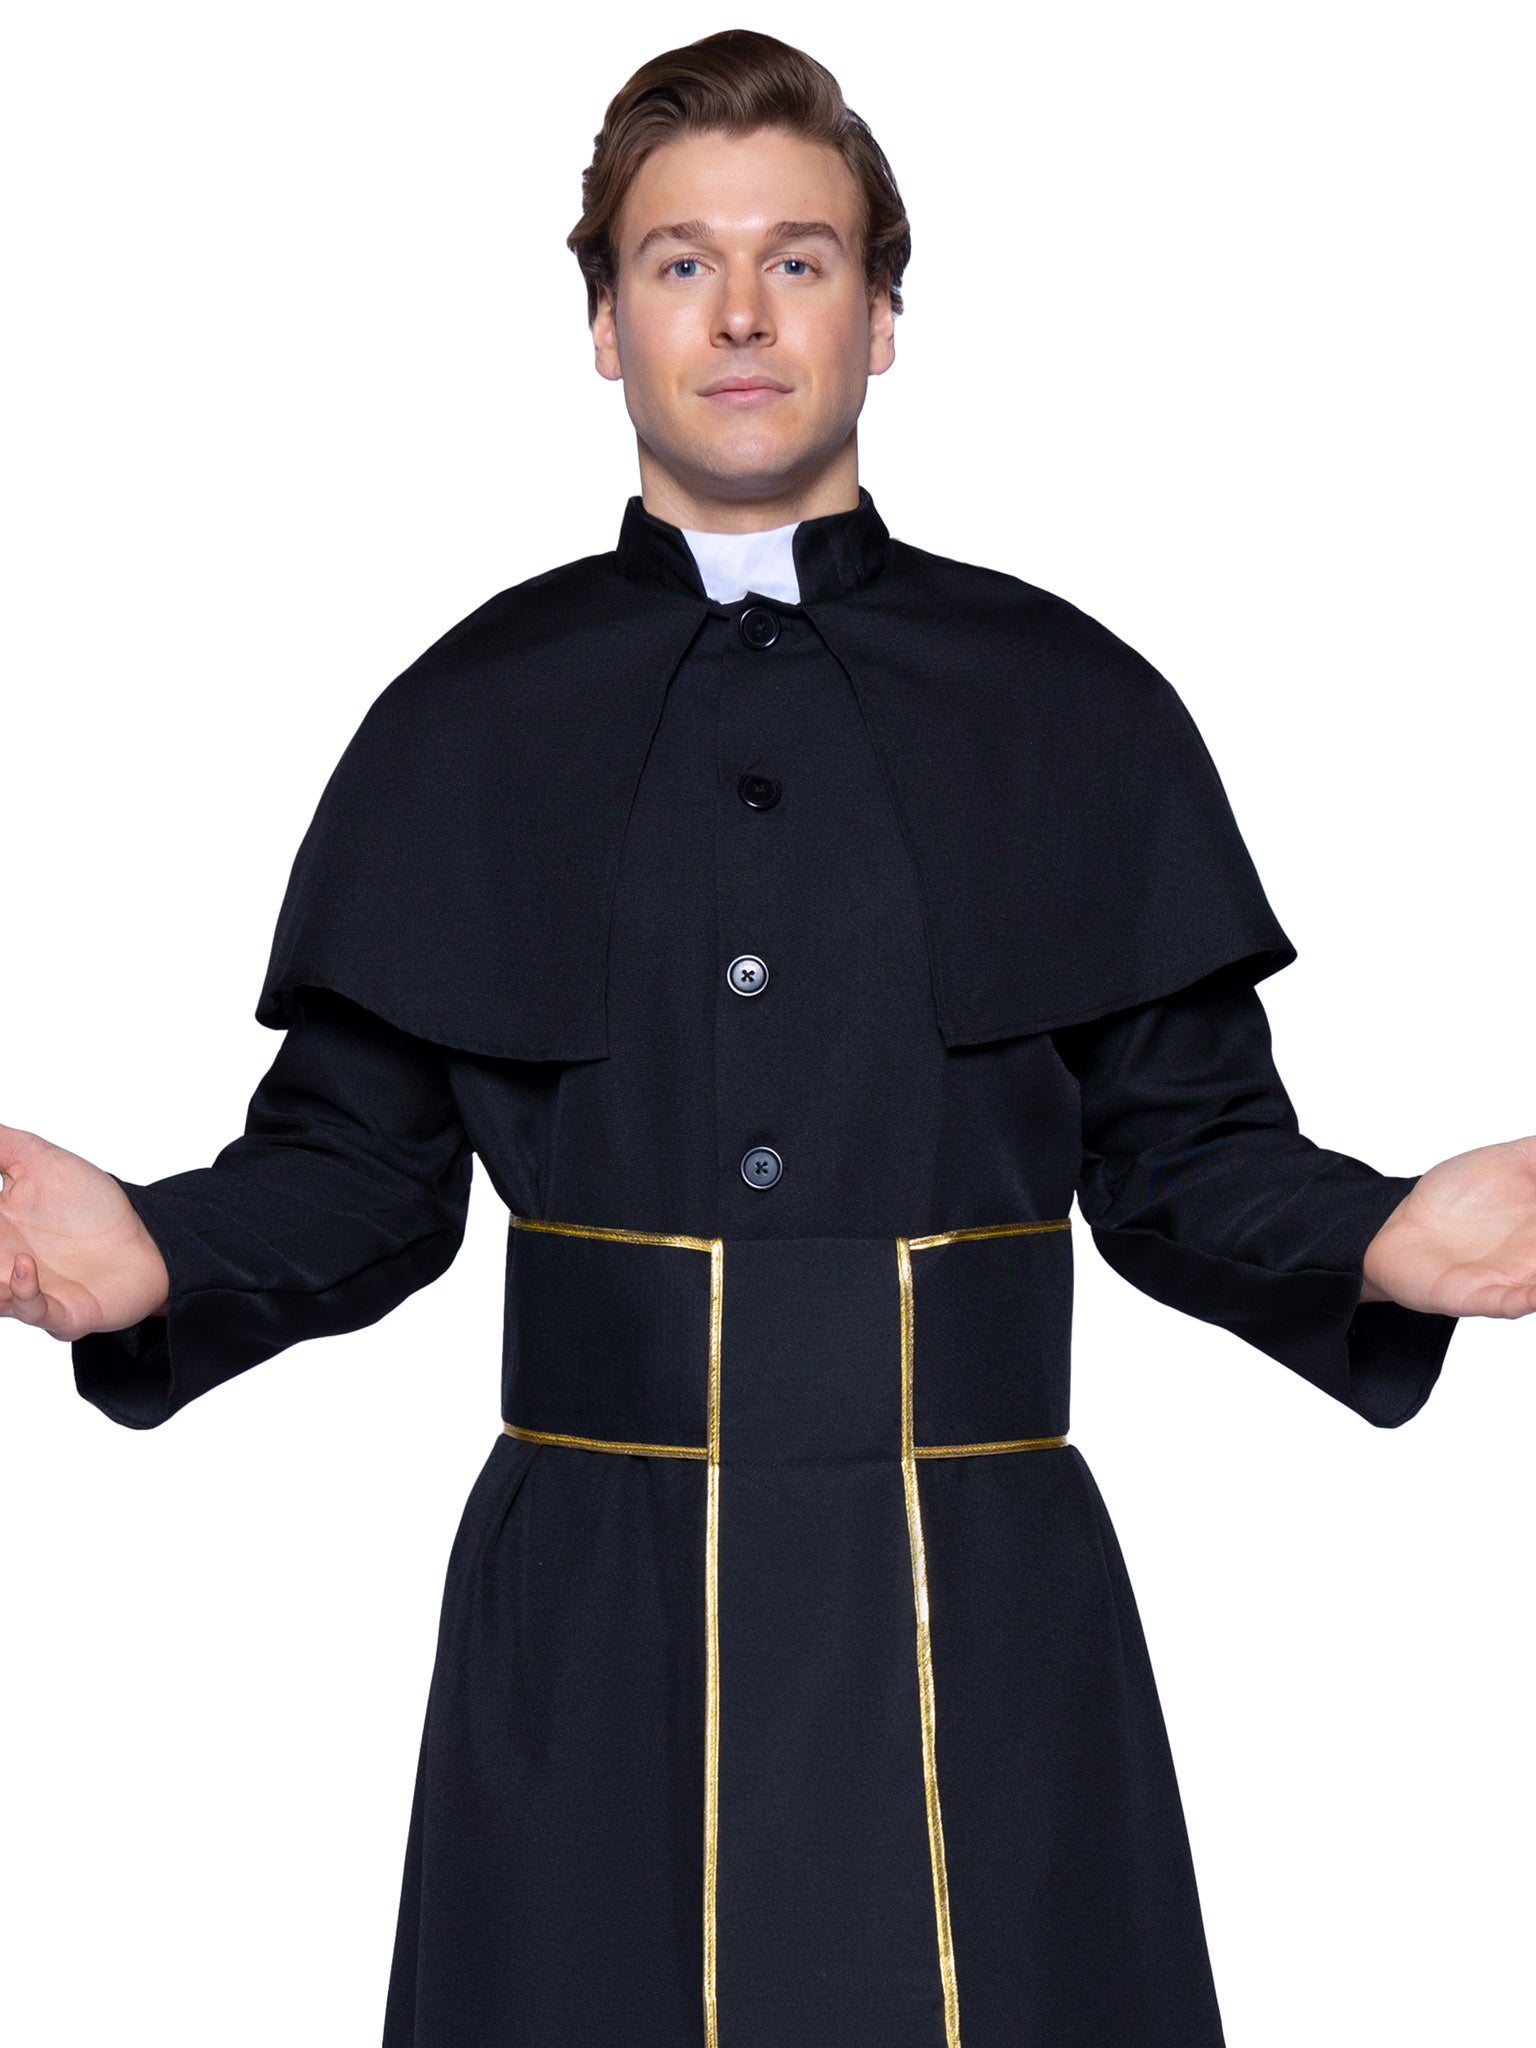 Priest Costume, Men's Halloween Costumes